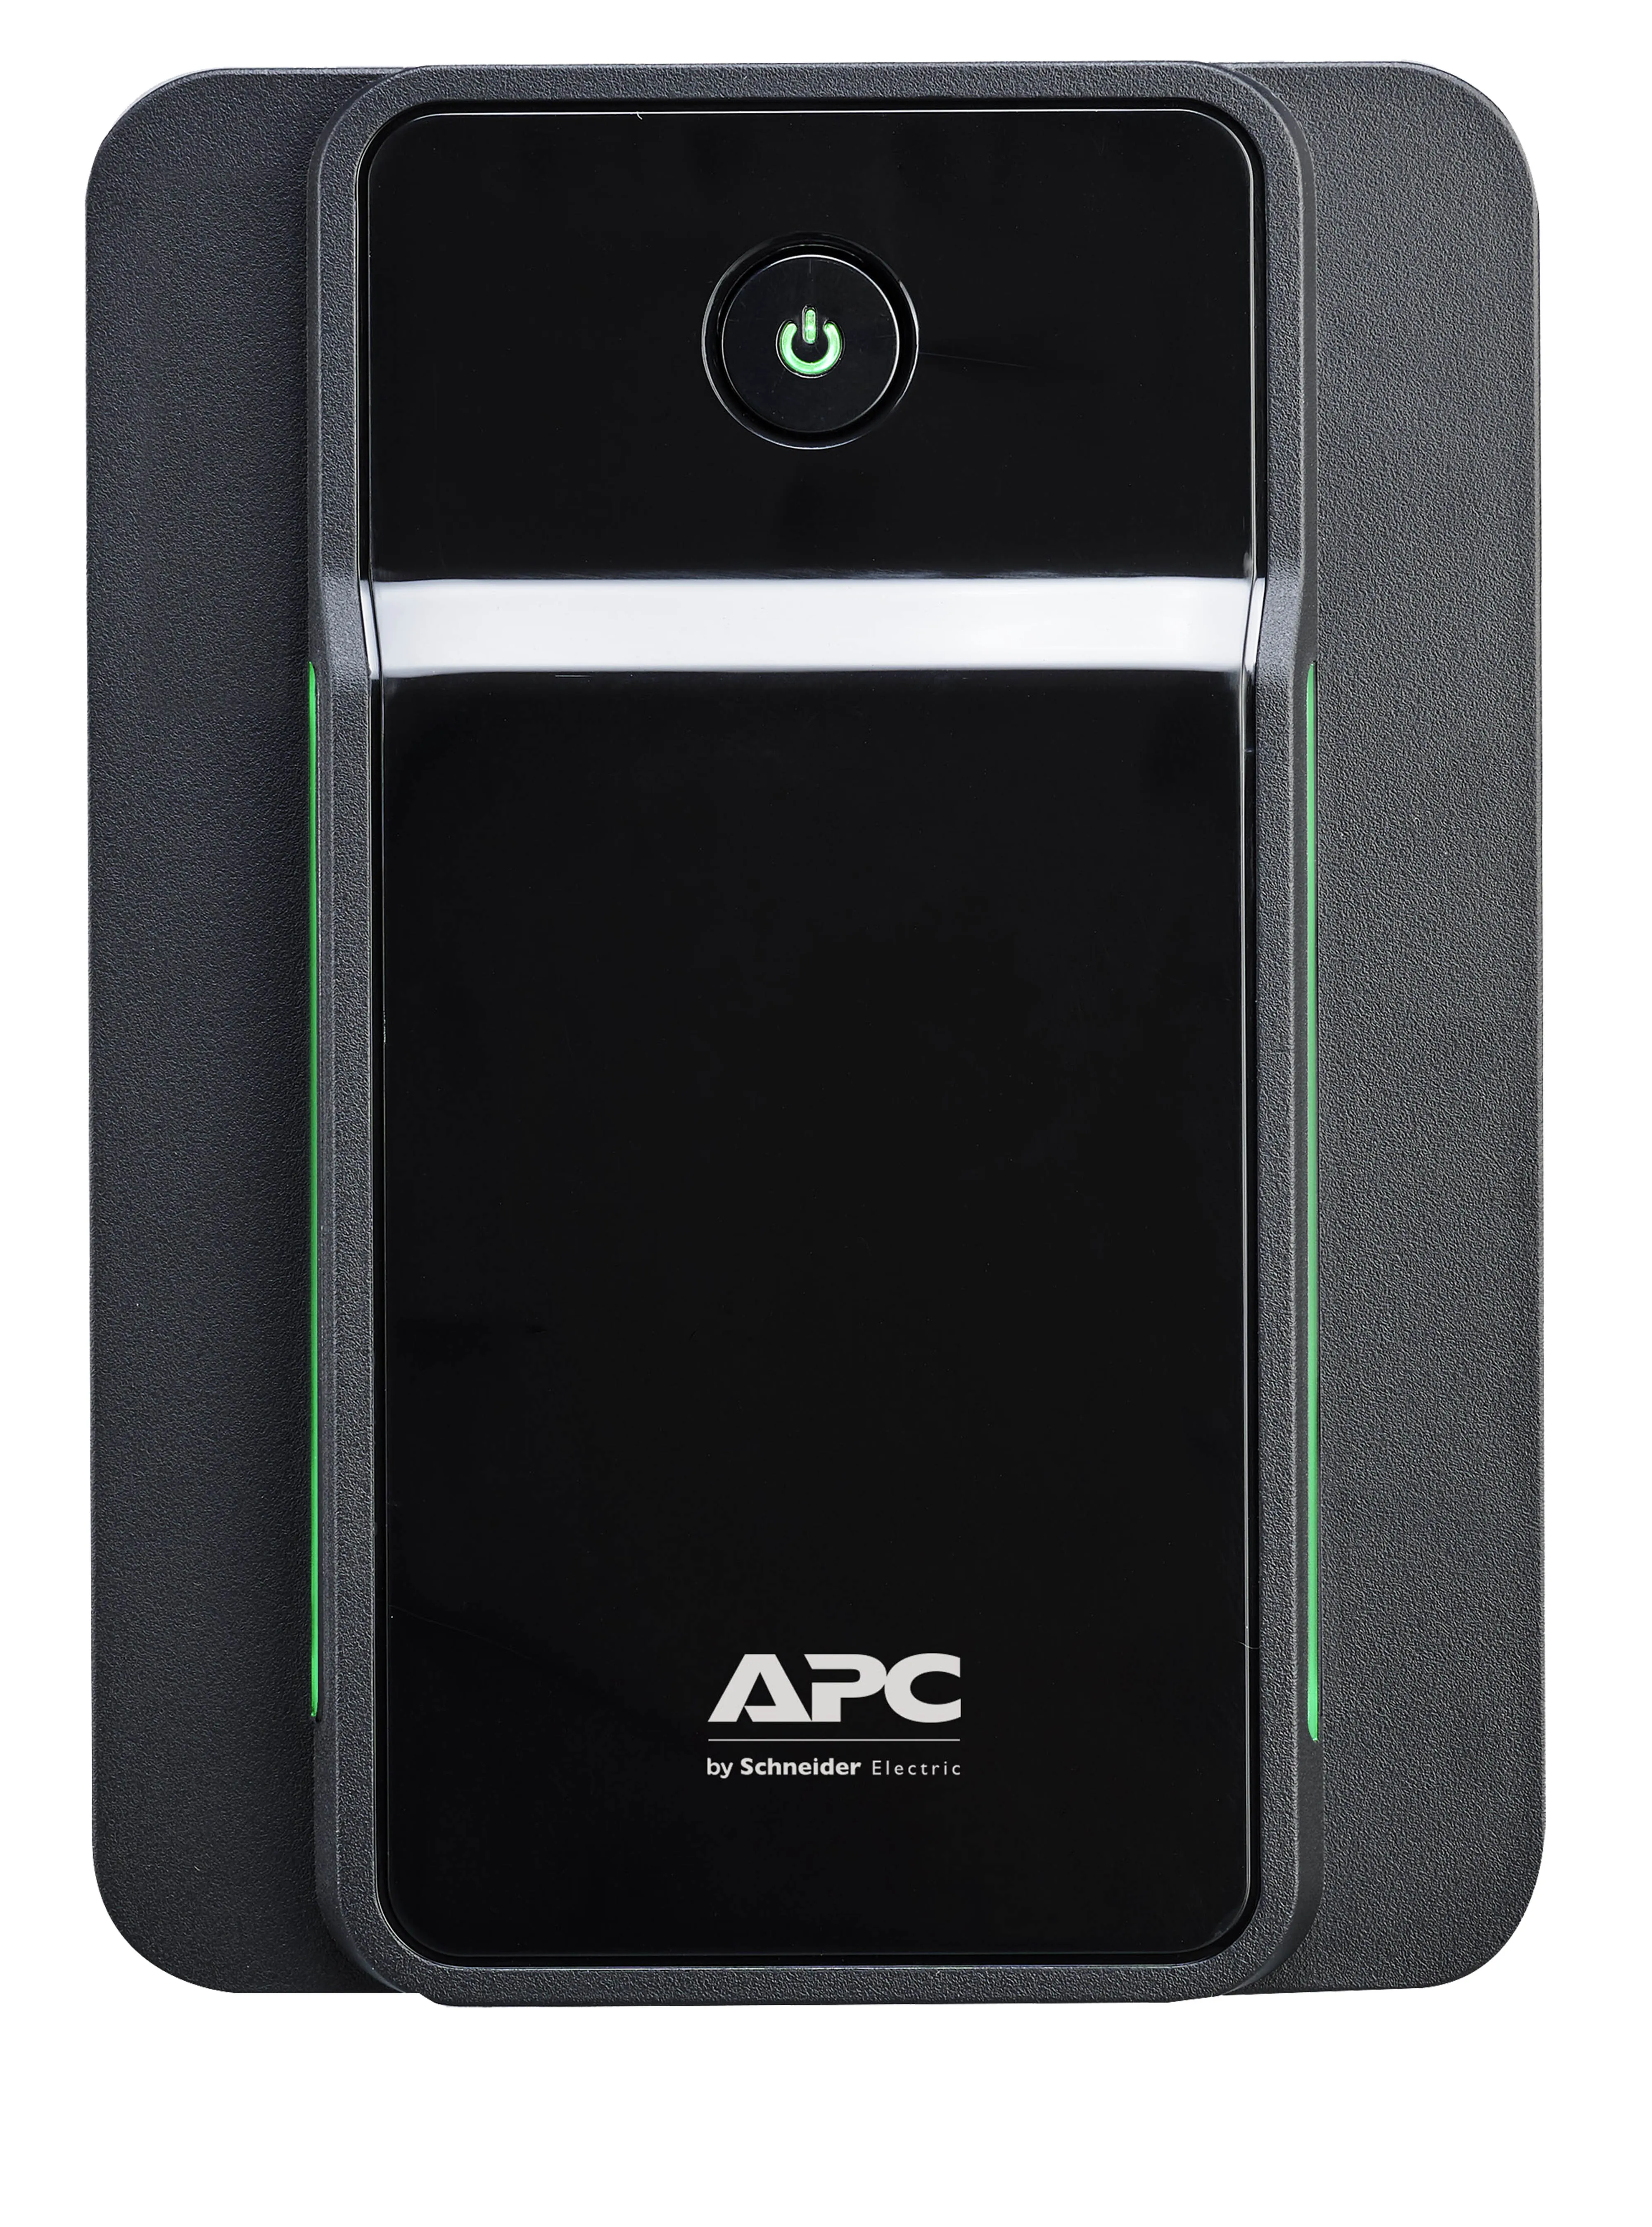 Vente APC Back-UPS 750VA 230V IEC APC au meilleur prix - visuel 10